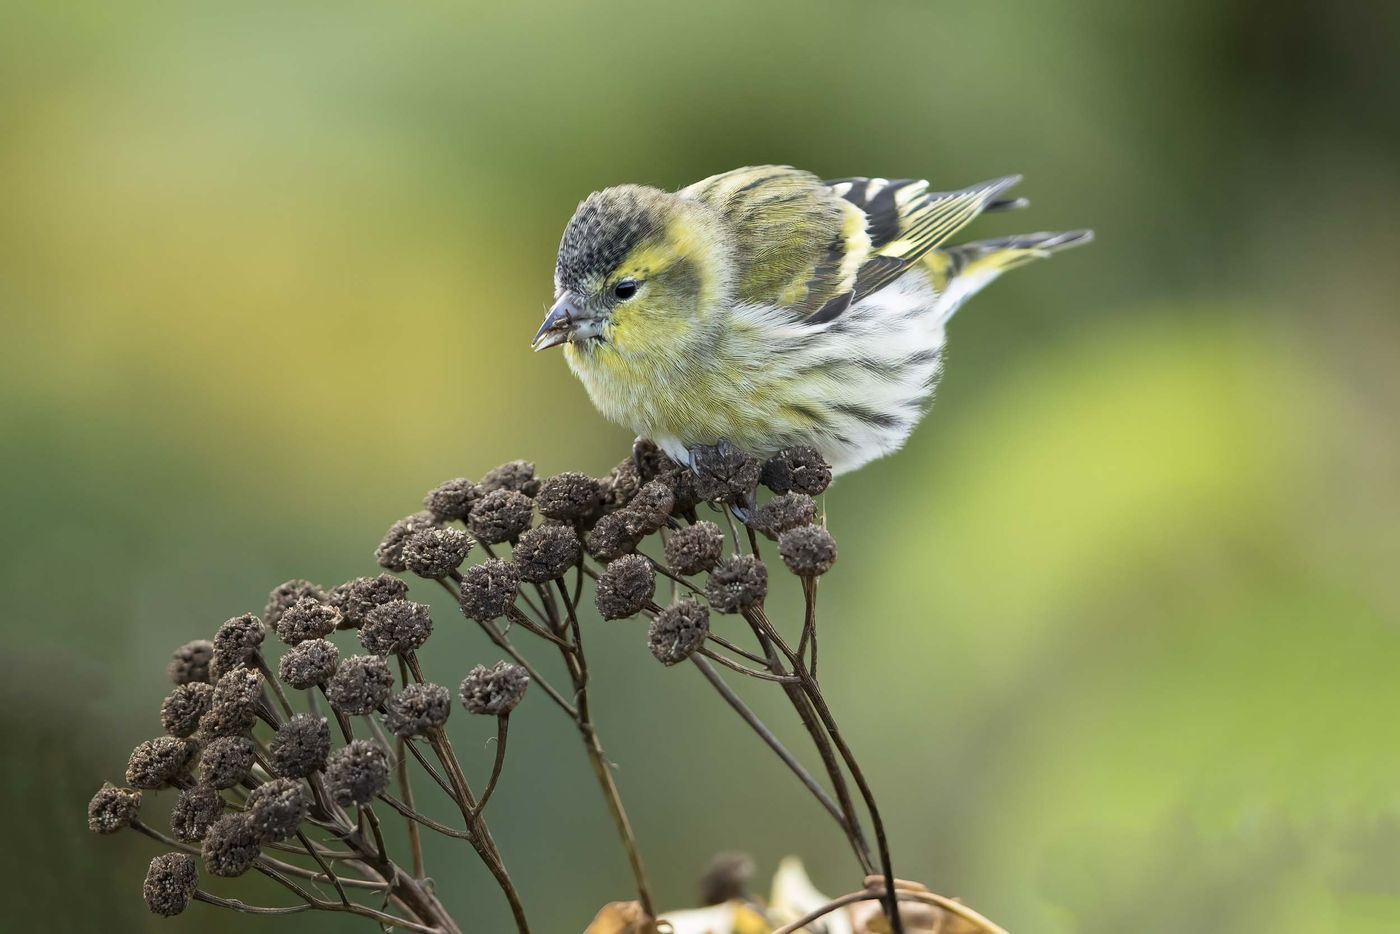 Beaucoup d'oiseaux se laissent observer de très près à Ouessant, tant ils sont affamés. © Noé Terorde